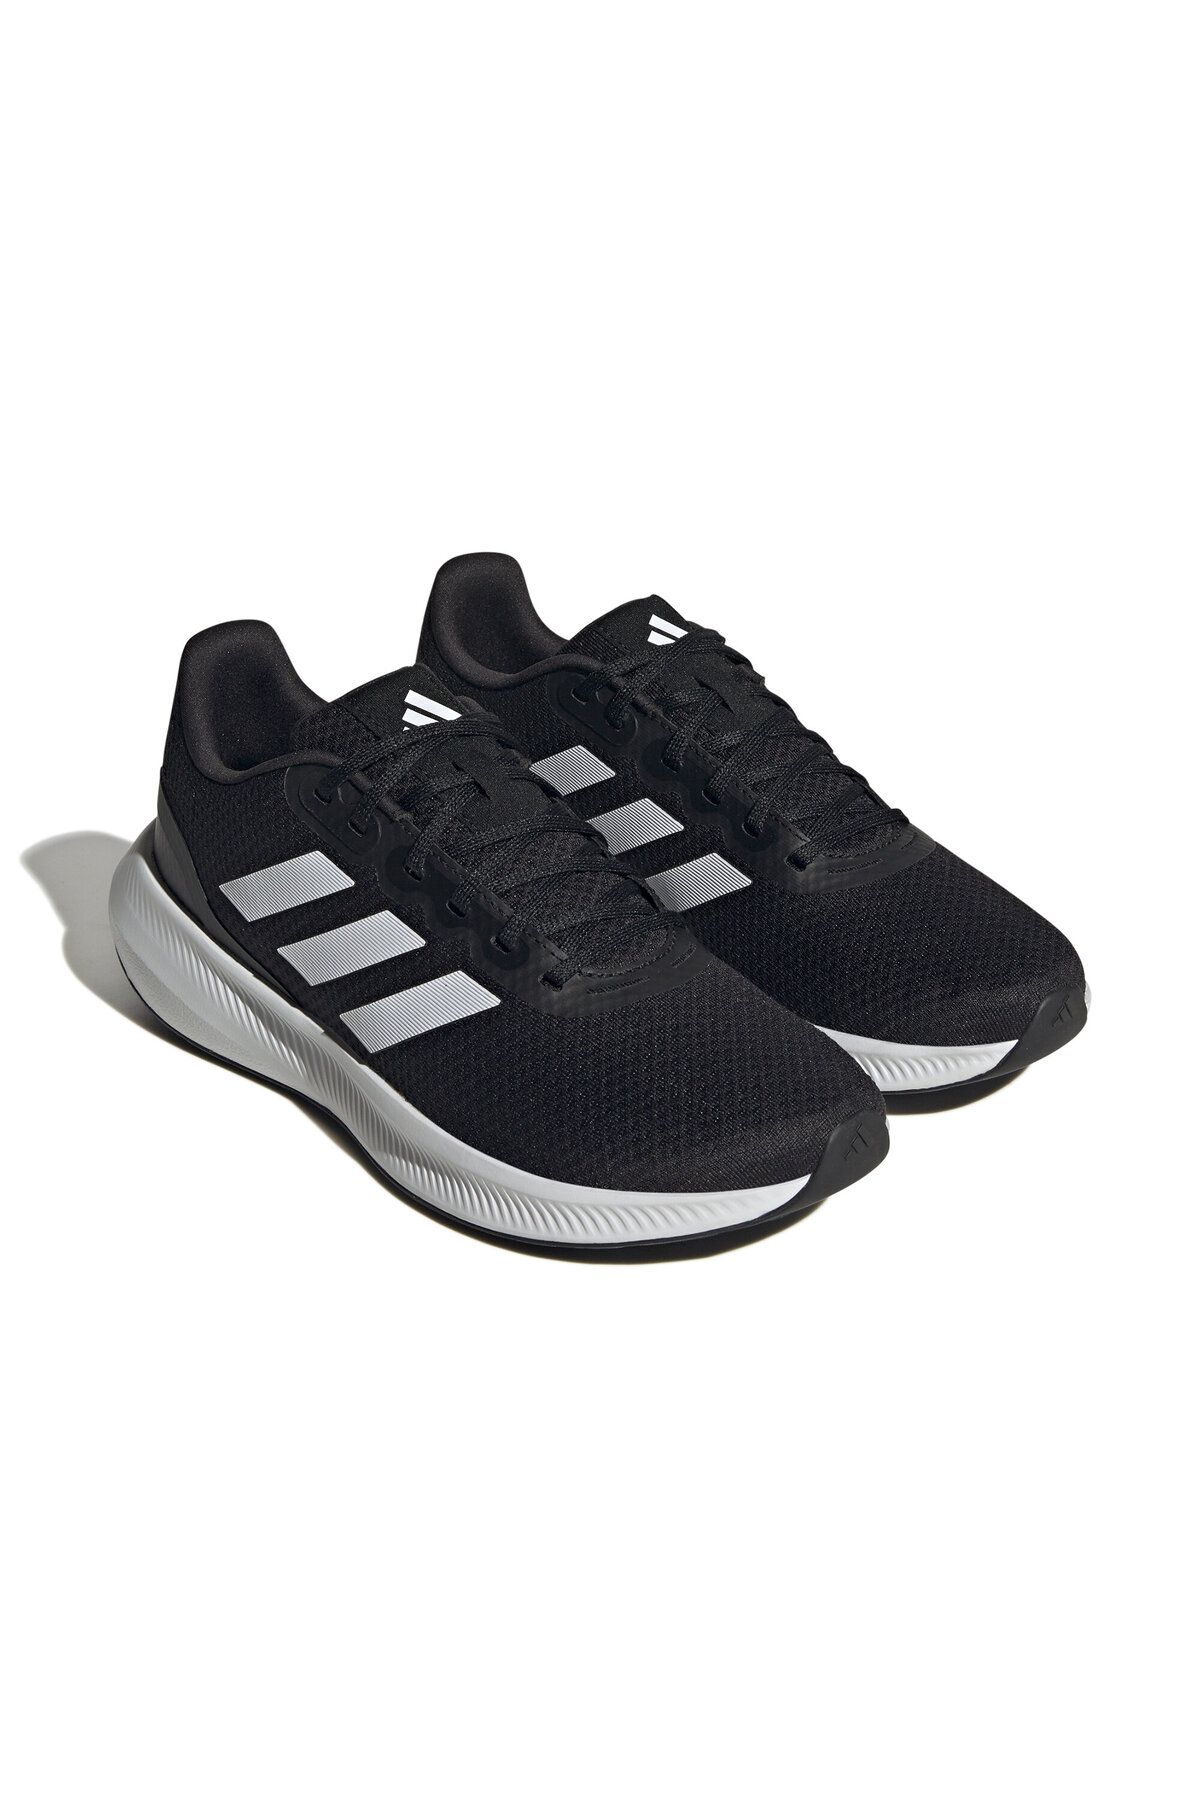 adidas Runfalcon 3.0 Unisex Günlük Kullanıma Uygun Koşu Spor Ayakkabı Sneaker